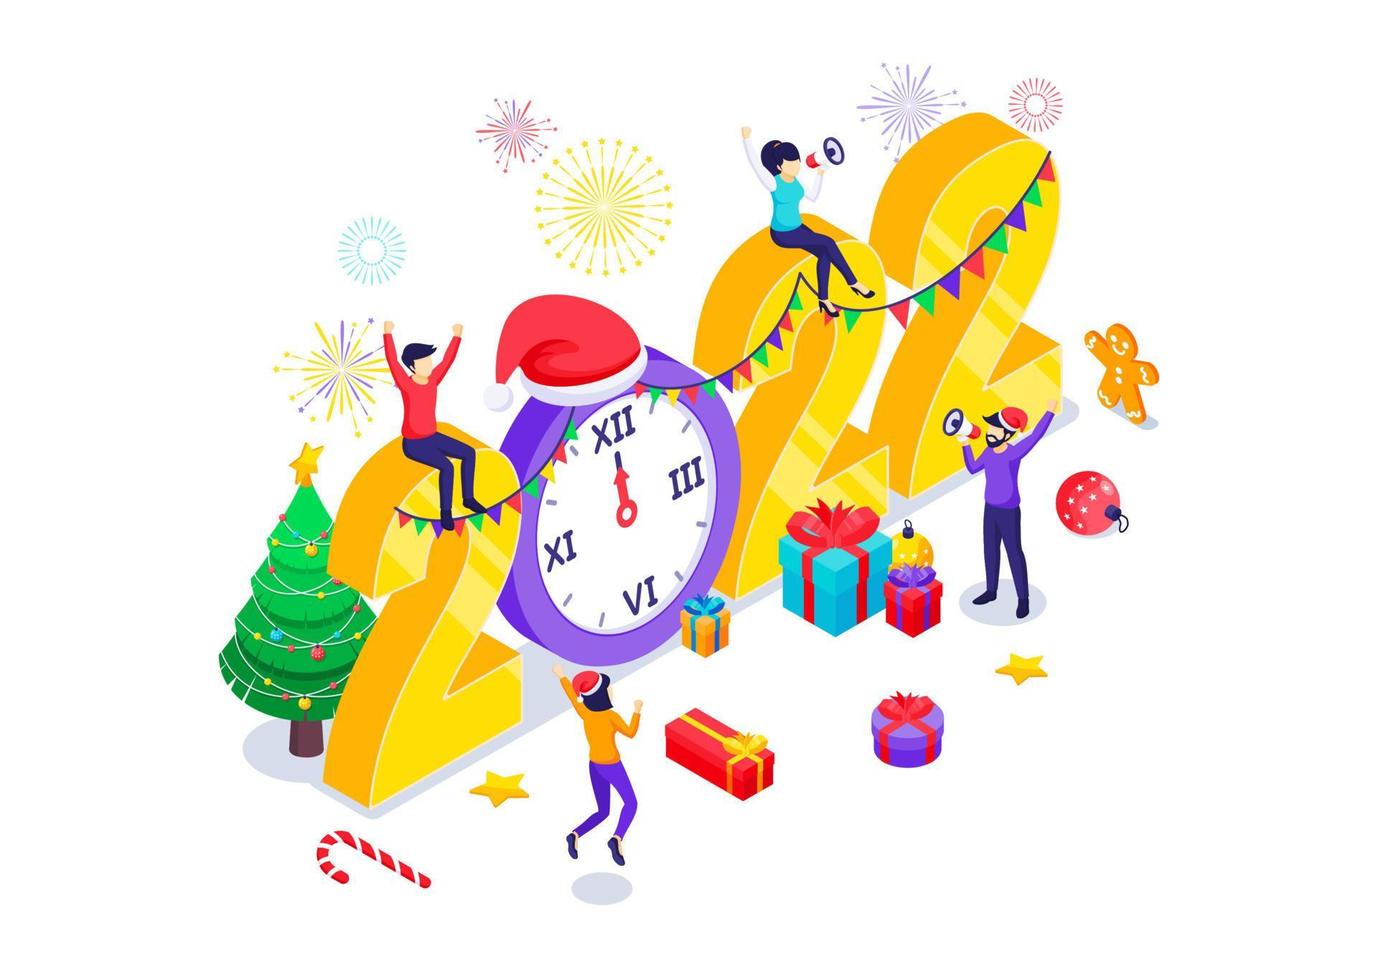 mensen vieren nieuwjaar in de buurt van versierd groot 2022-nummer met geschenkdozen en vuurwerk. prettige kerstdagen en gelukkig nieuwjaar ontwerpconcept. isometrische vectorillustratie vector